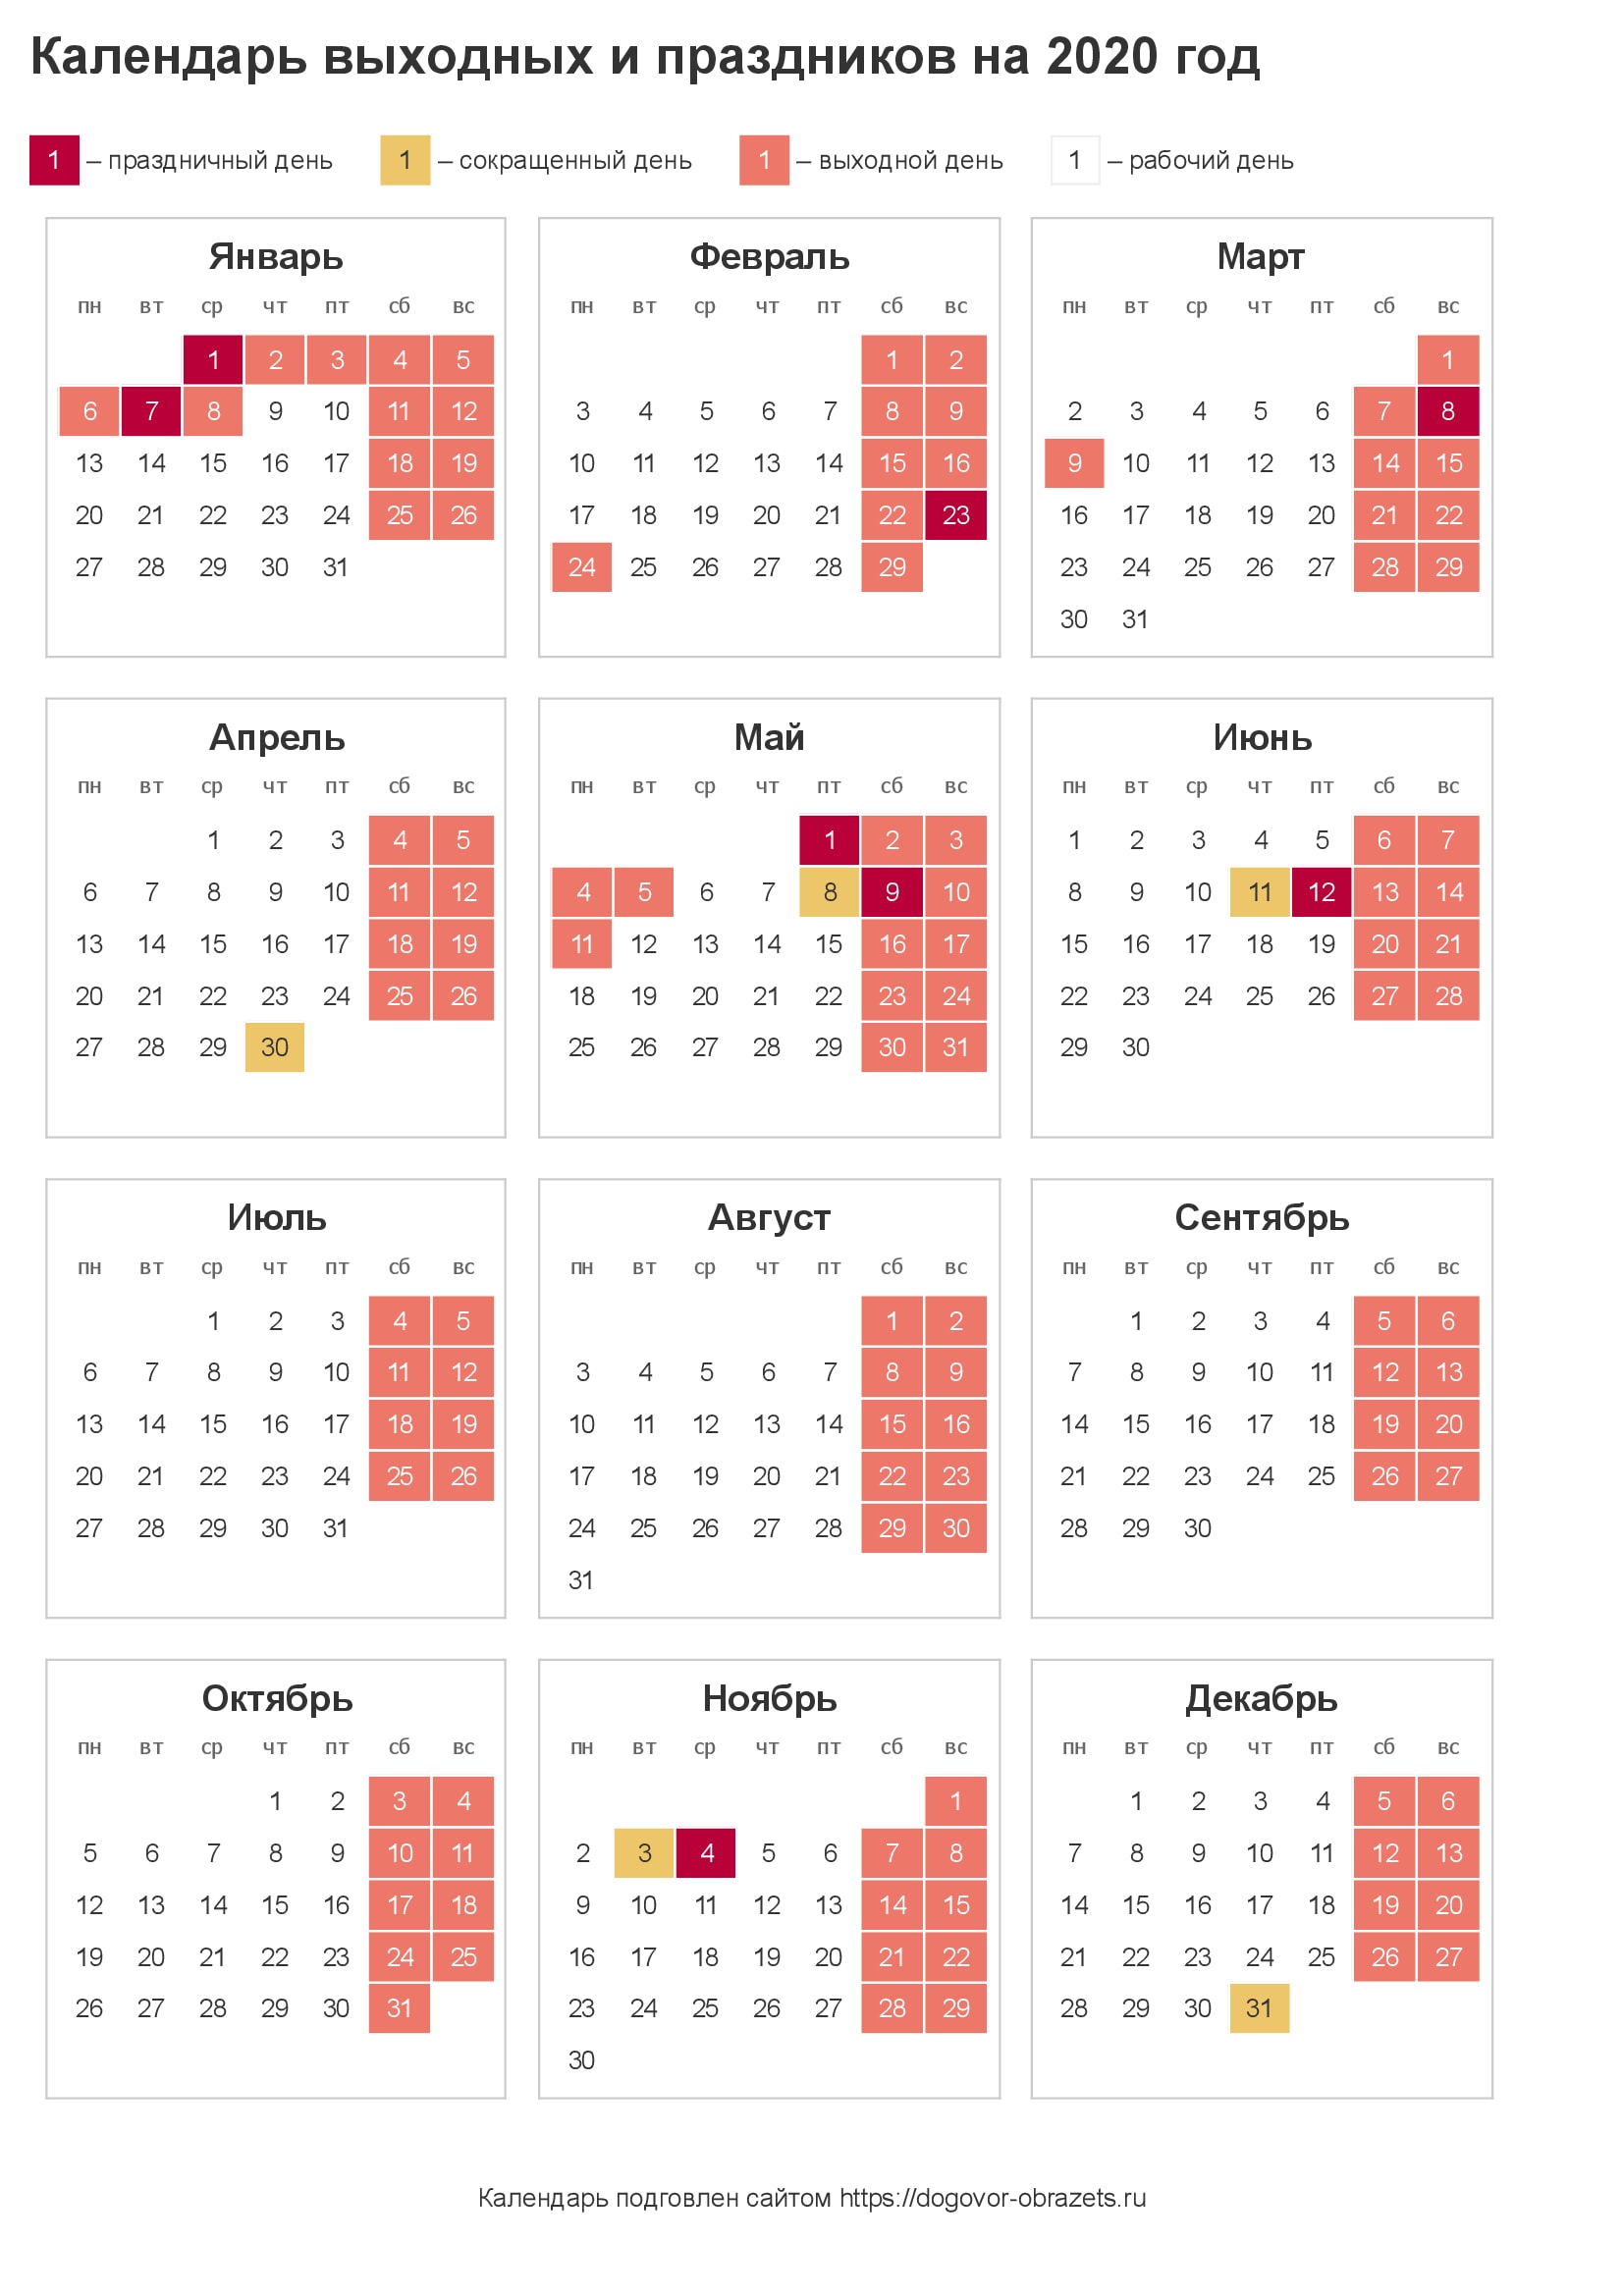 Календарь праздников на 2020 год